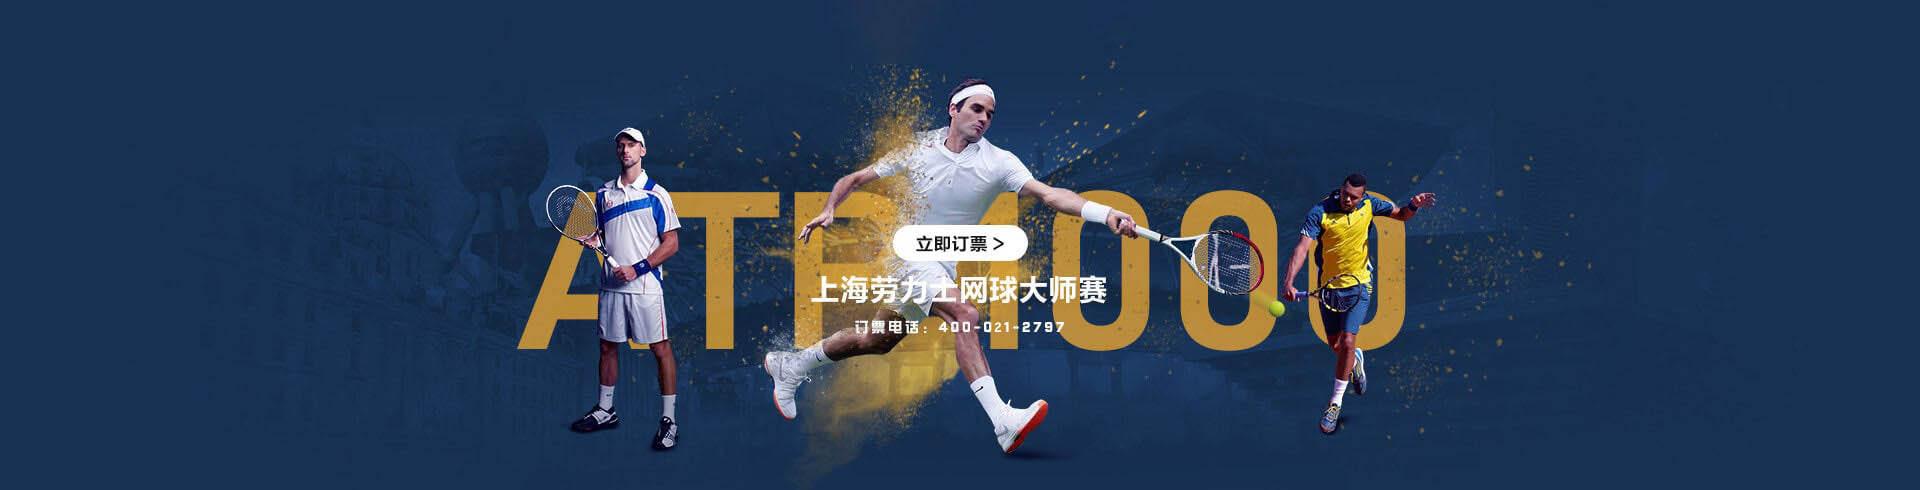 2023年上海ATP000劳力士网球大师赛官方订票